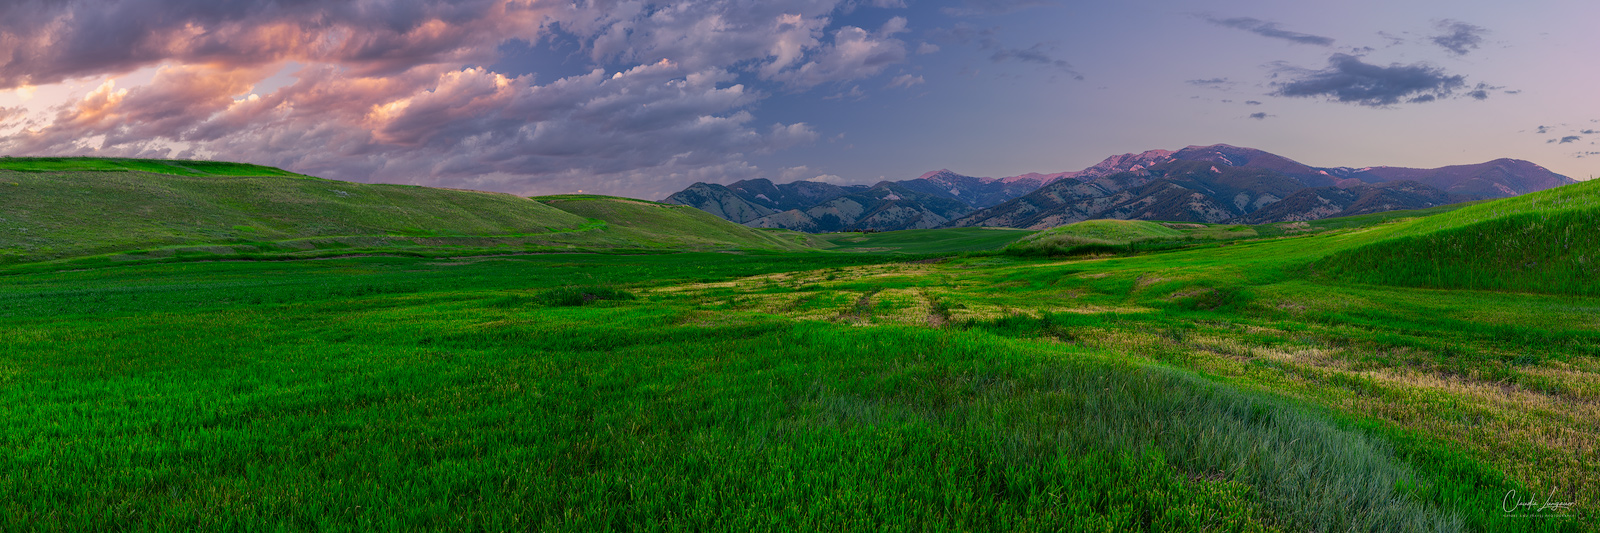 View on Bridger Mountain Range at sunset in Bozeman, Montana.